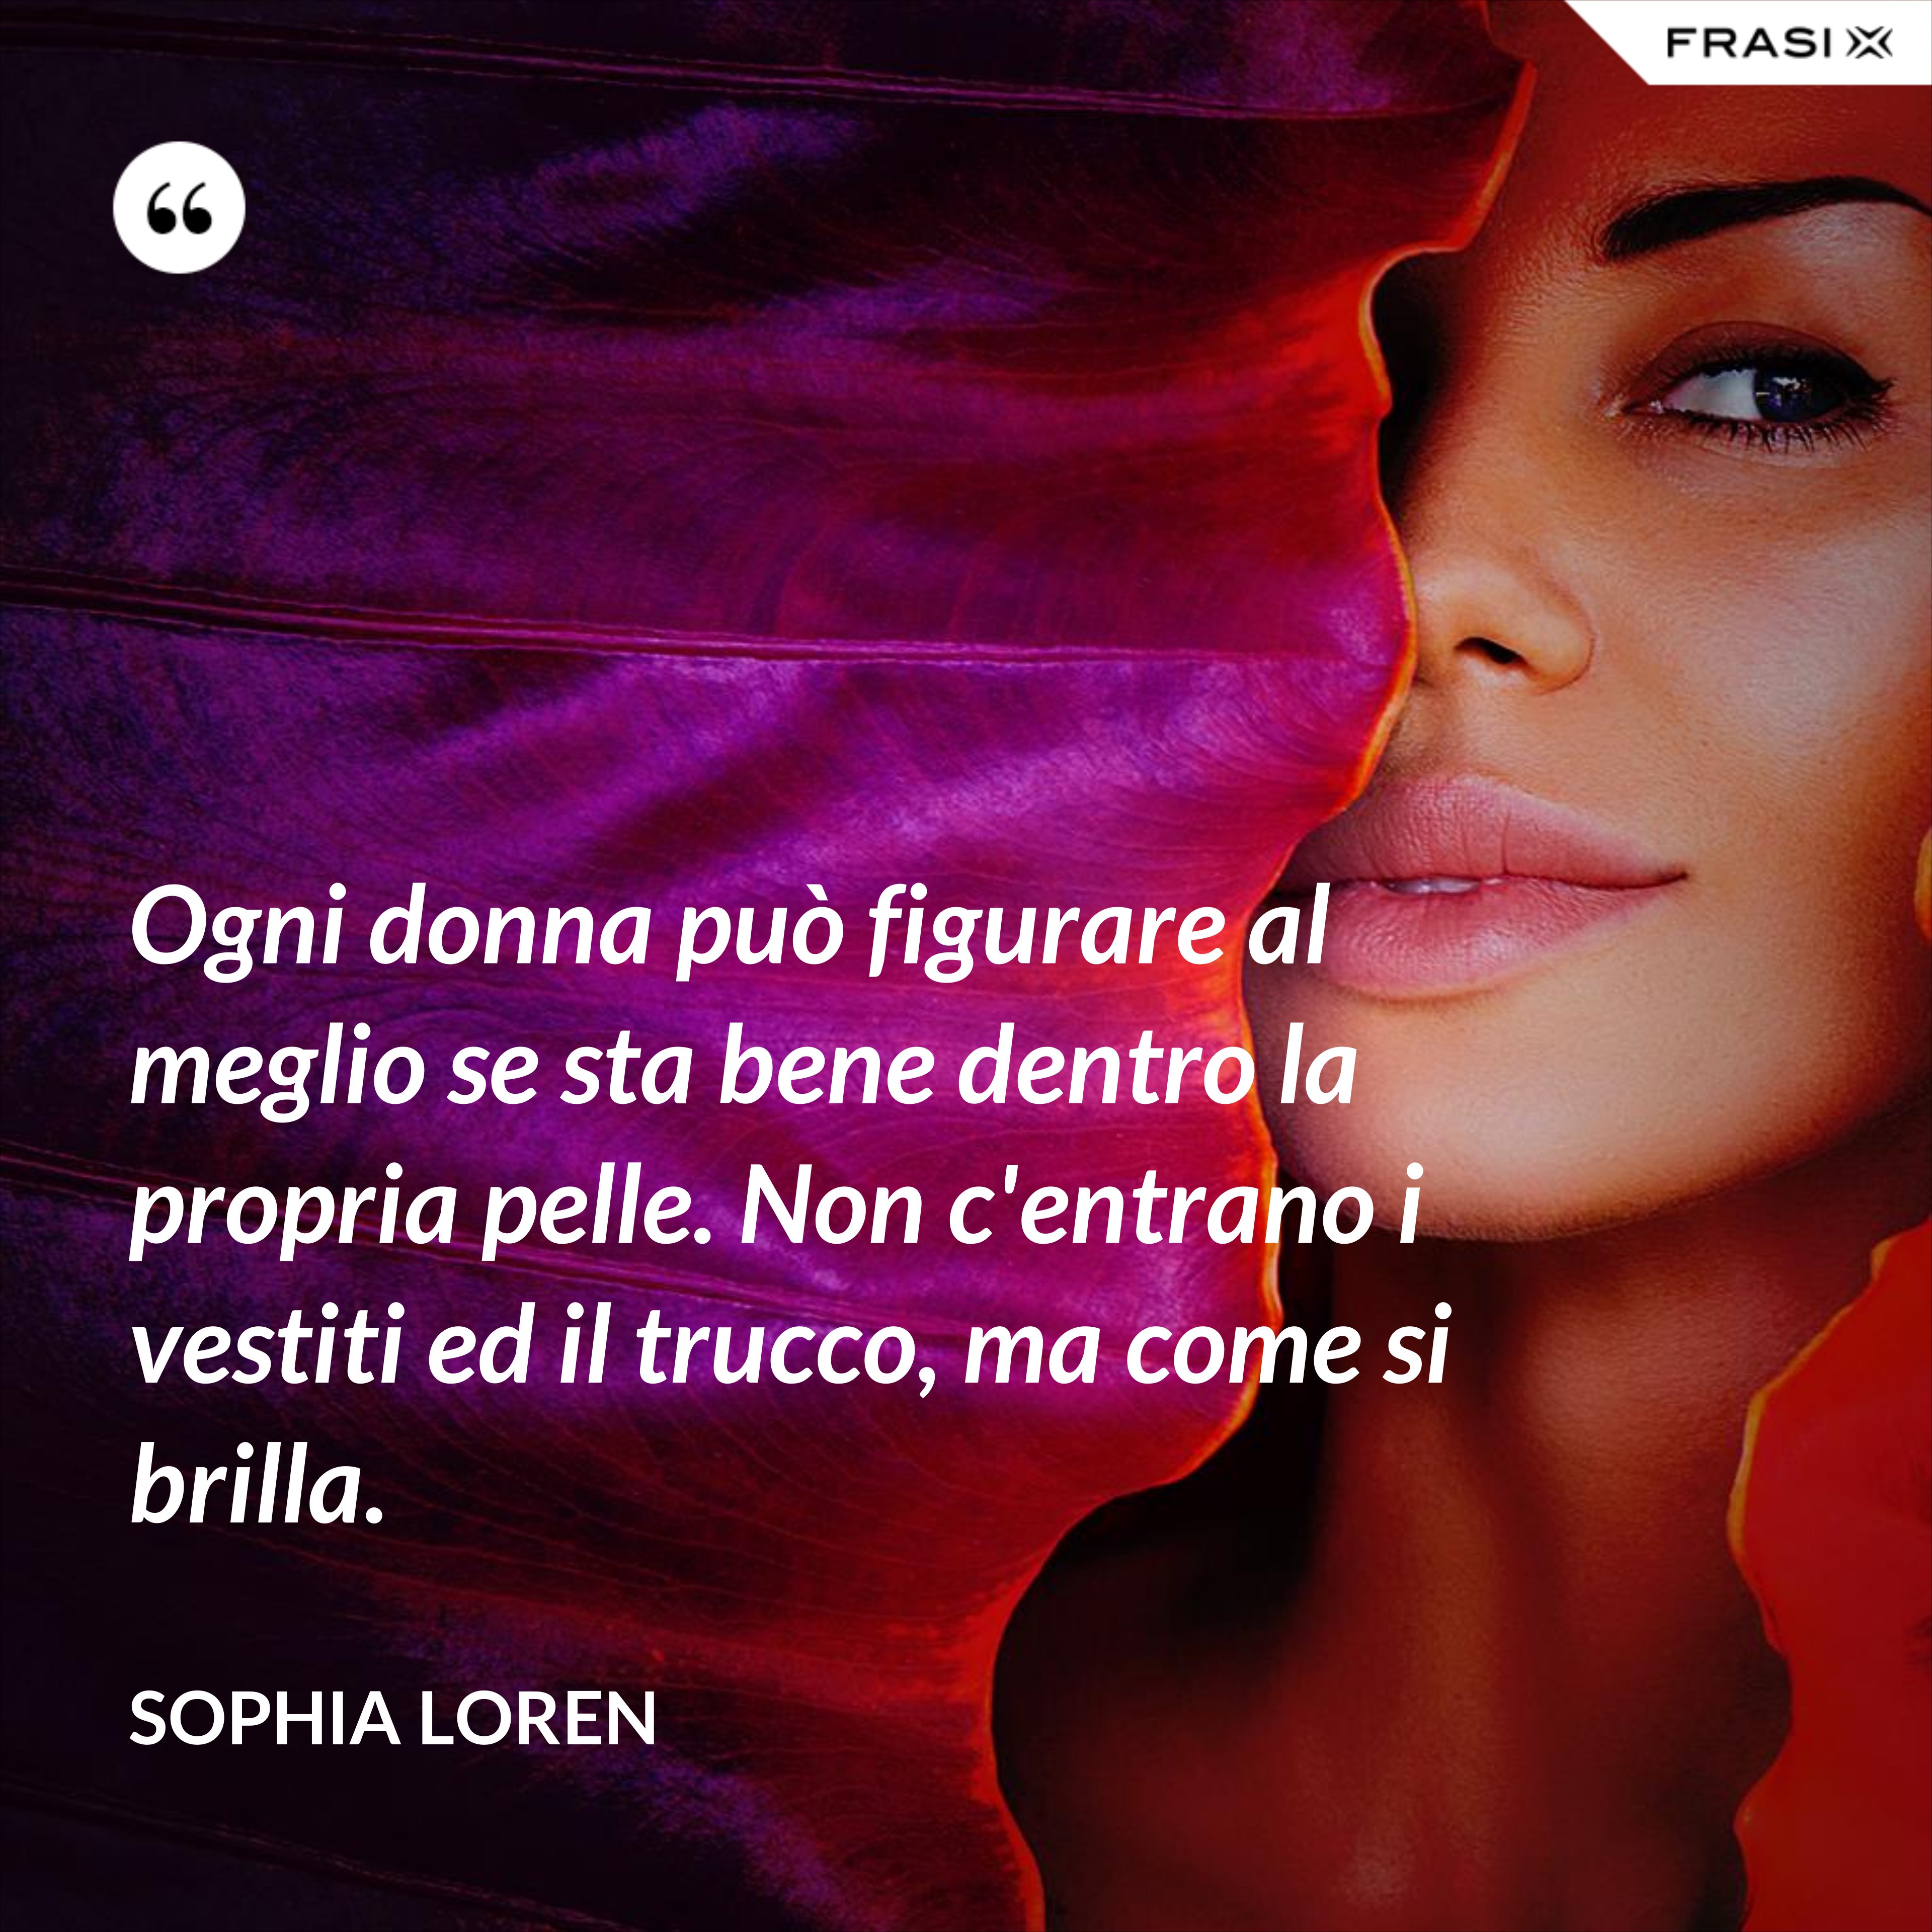 Ogni donna può figurare al meglio se sta bene dentro la propria pelle. Non c'entrano i vestiti ed il trucco, ma come si brilla. - Sophia Loren